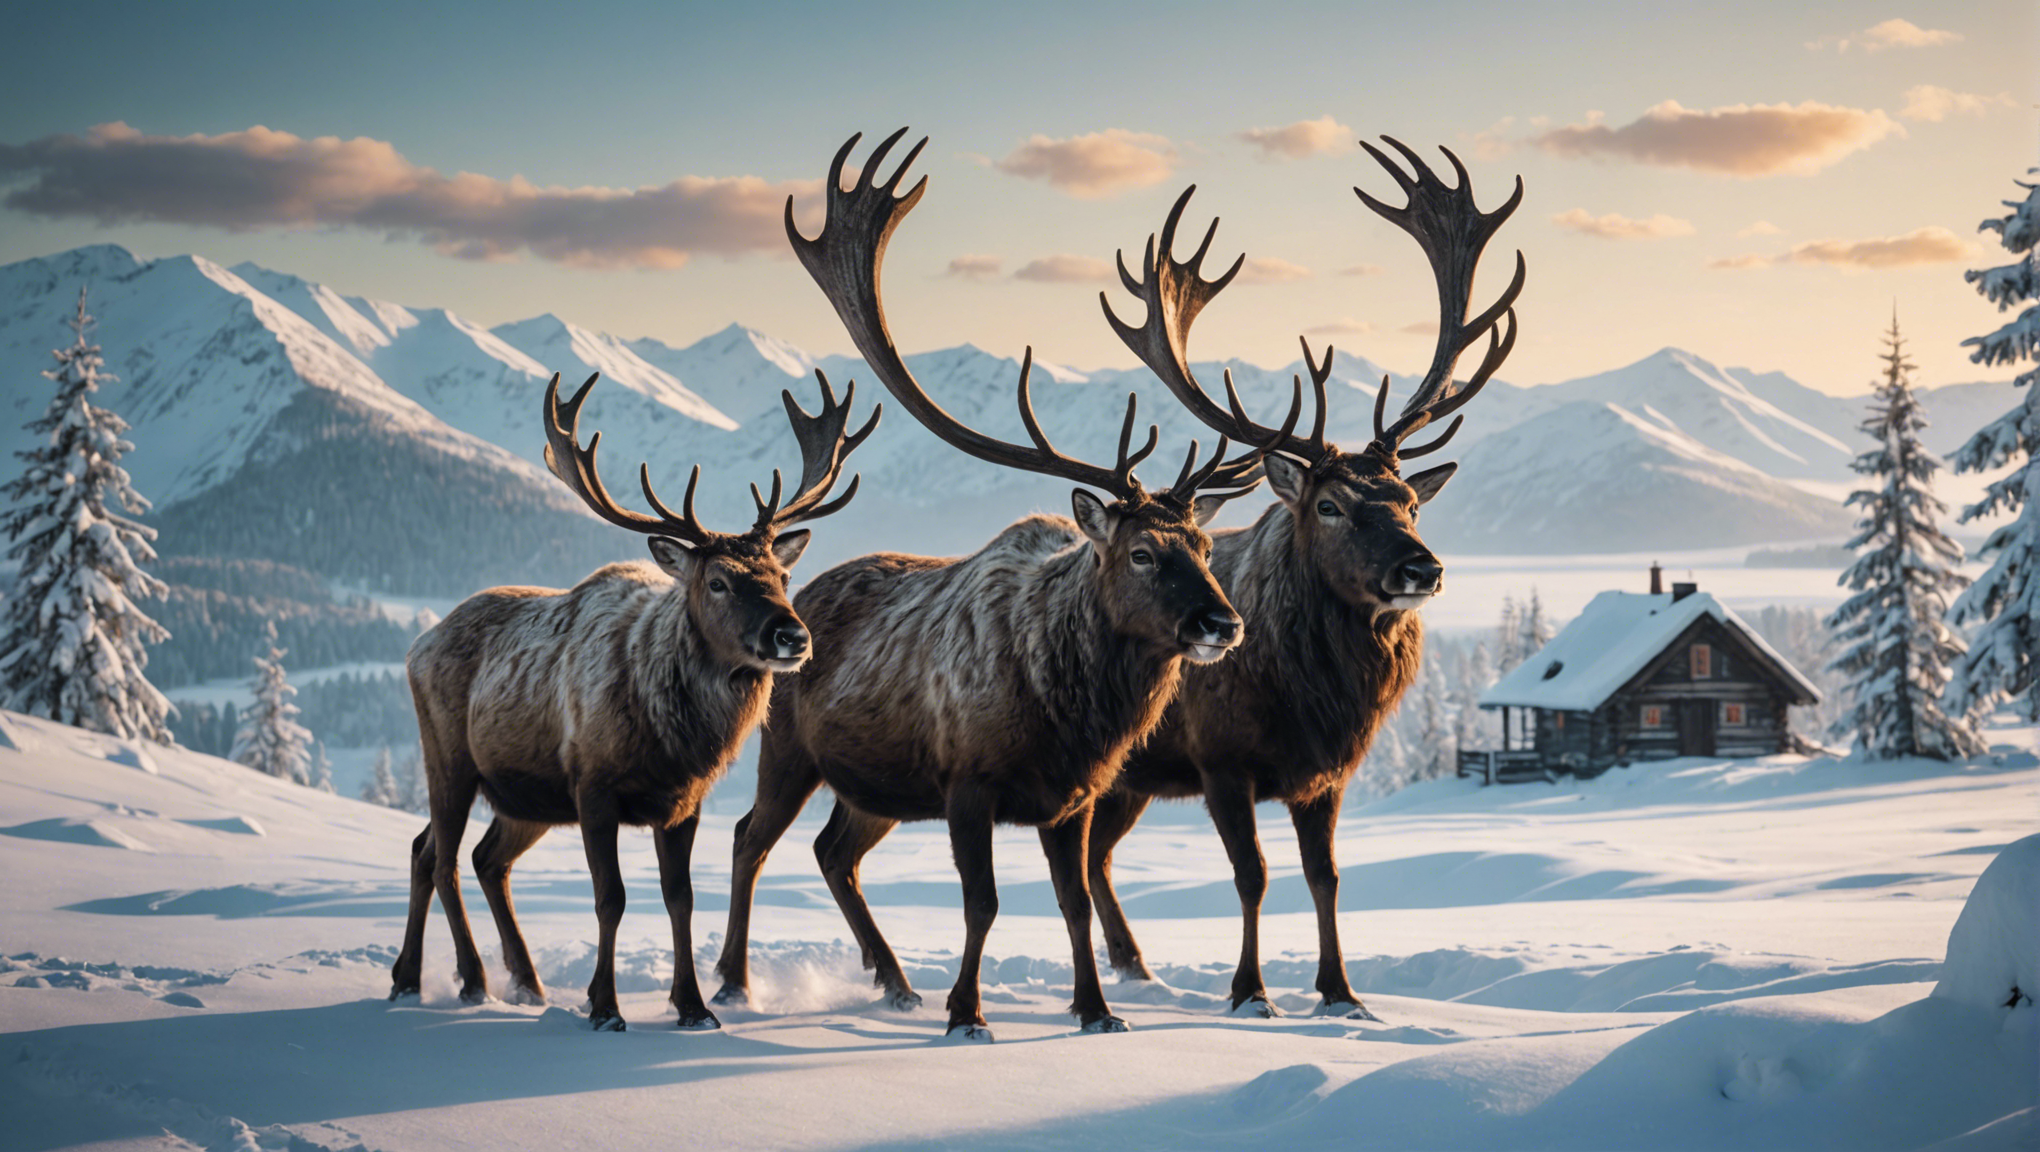 découvrez les mythes et légendes fascinants sur les liens entre les rennes et les traditions des peuples nordiques. plongez dans l'univers mystique des peuples scandinaves et samis.